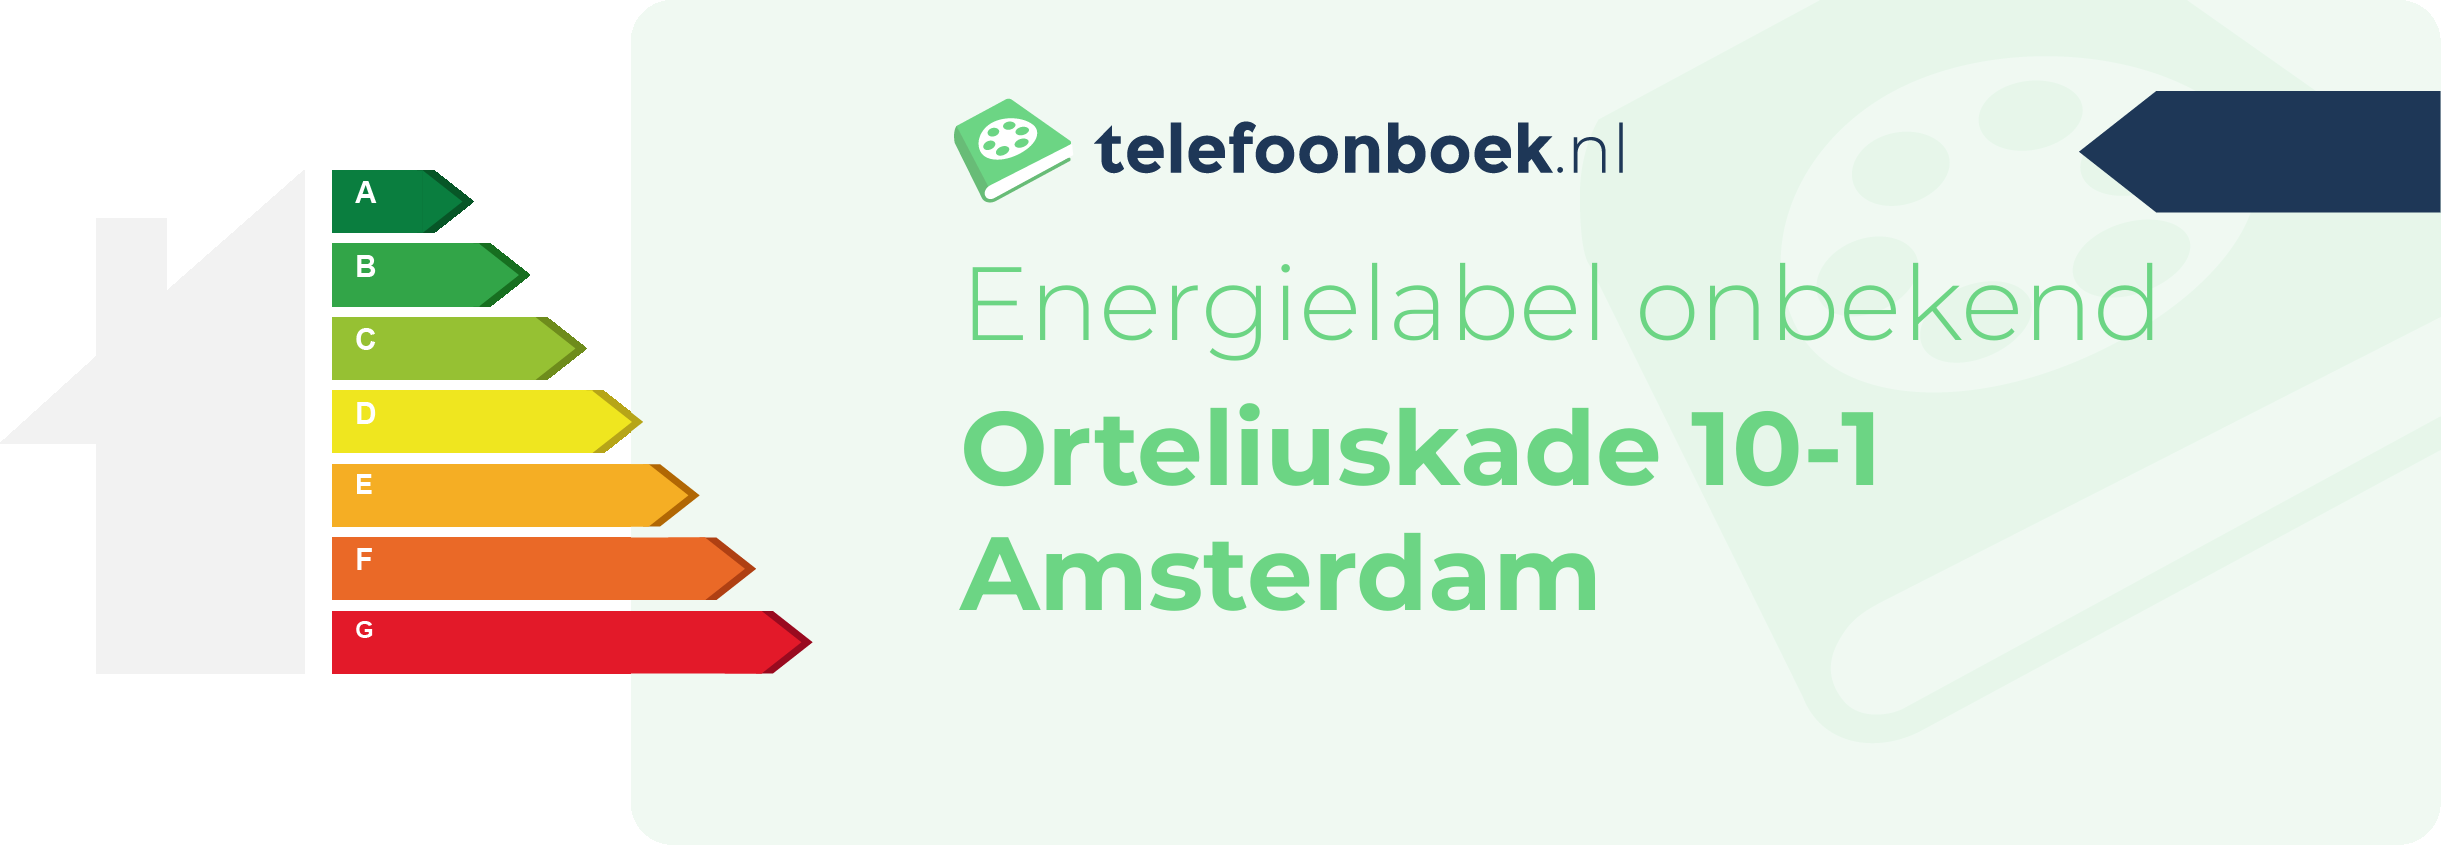 Energielabel Orteliuskade 10-1 Amsterdam